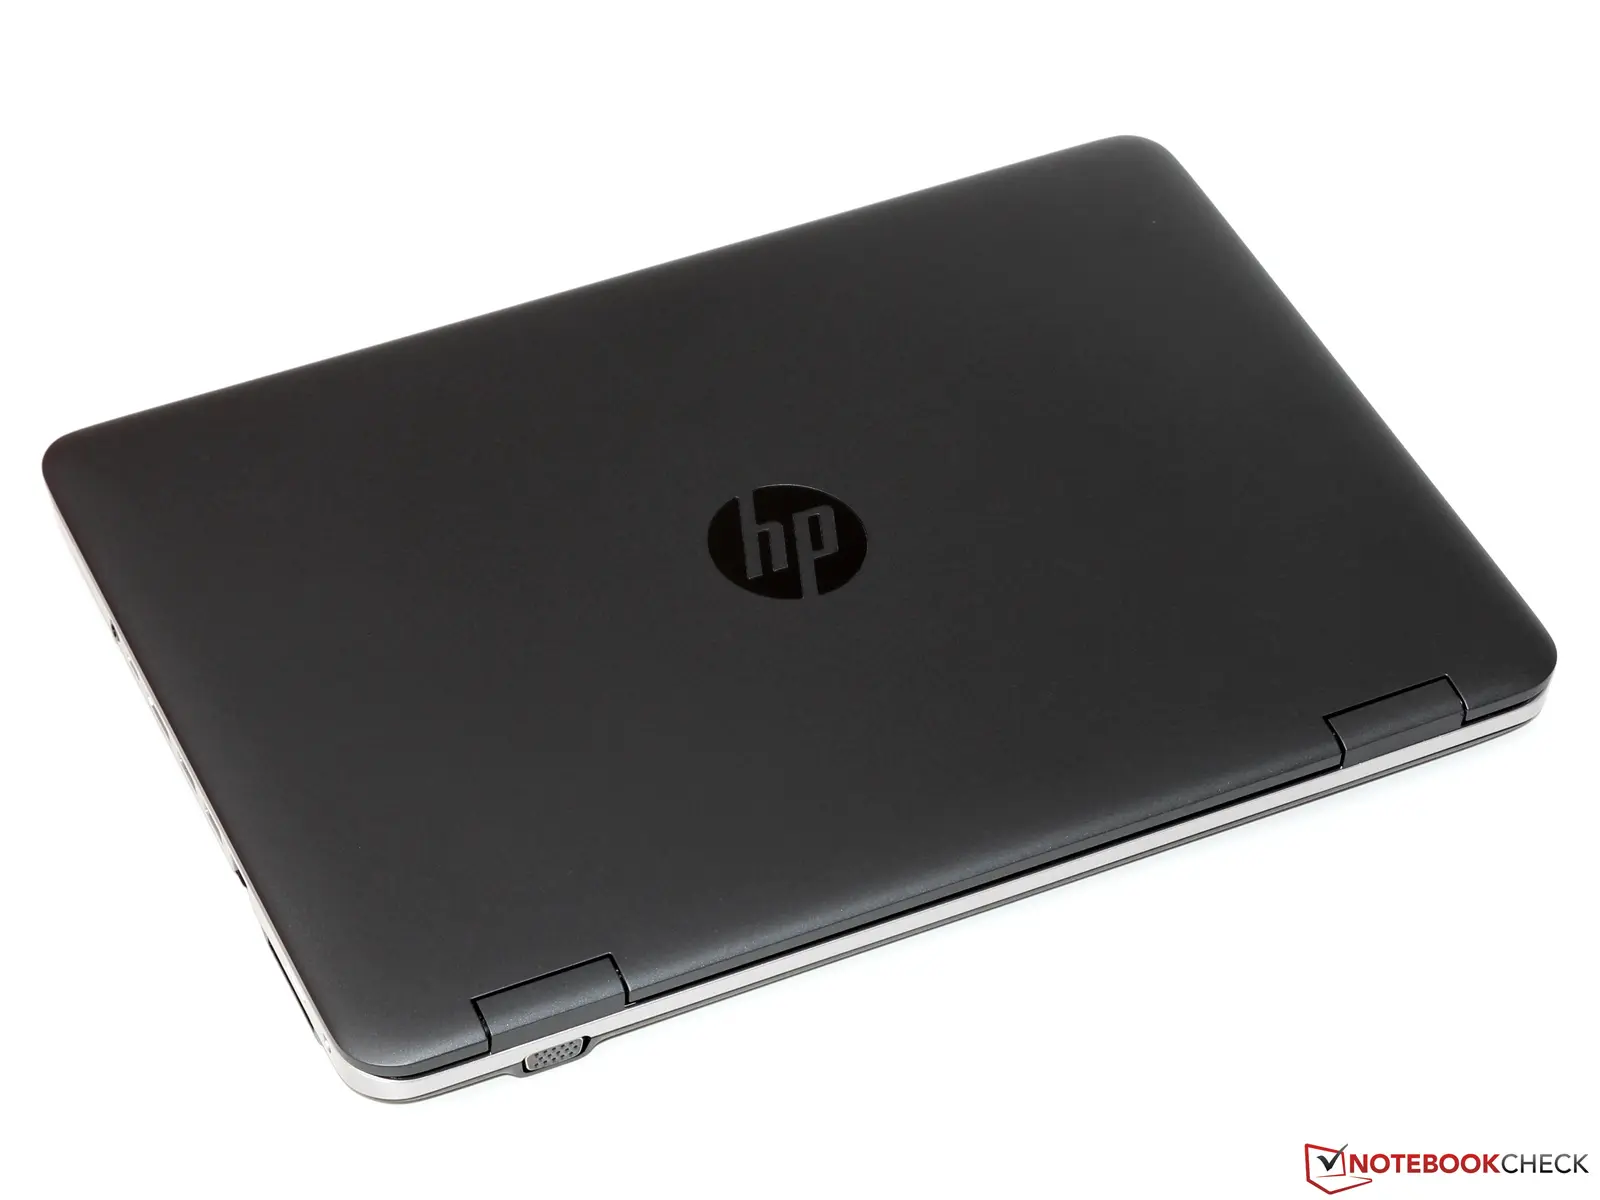 hewlett packard probook 640 g2 review - Can HP ProBook 650 G2 run Windows 10